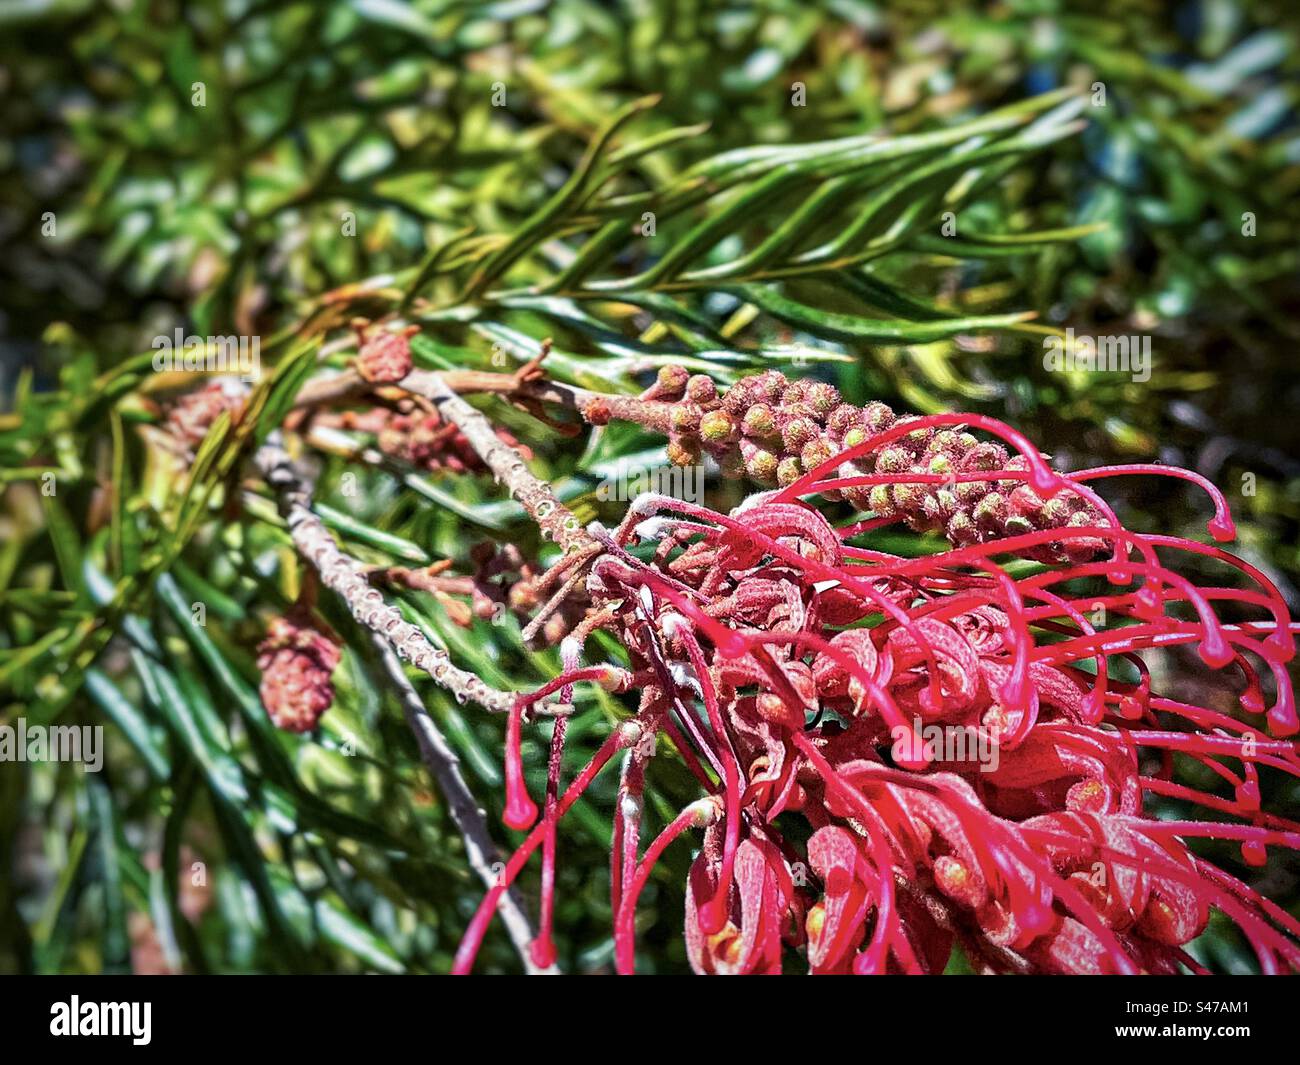 Nahaufnahme der auffälligen roten Spinnenblüten der Grevillea, einer Gattung immergrüner blühender Pflanzen der Familie Proteaceae an einem sonnigen Frühlingsmorgen. Klassische australische einheimische Pflanze. Stockfoto